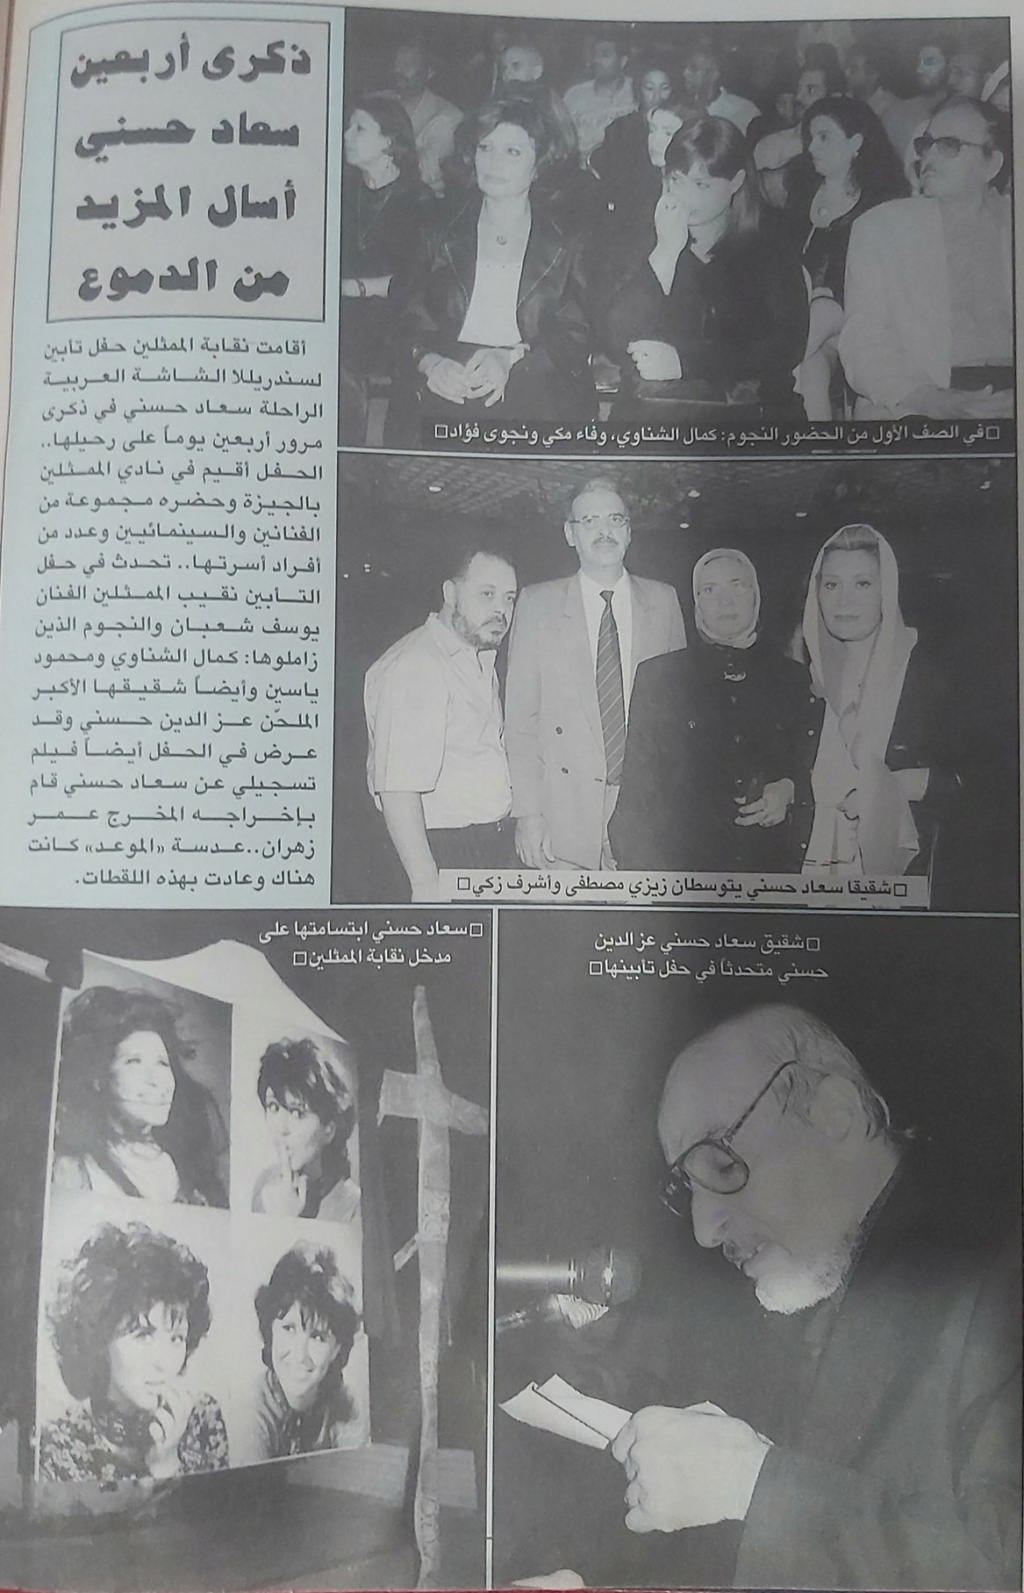 سعاد - خبر صحفي : ذكرى أربعين سعاد حسني أسال المزيد من الدموع 2001 م Ao_eoo10